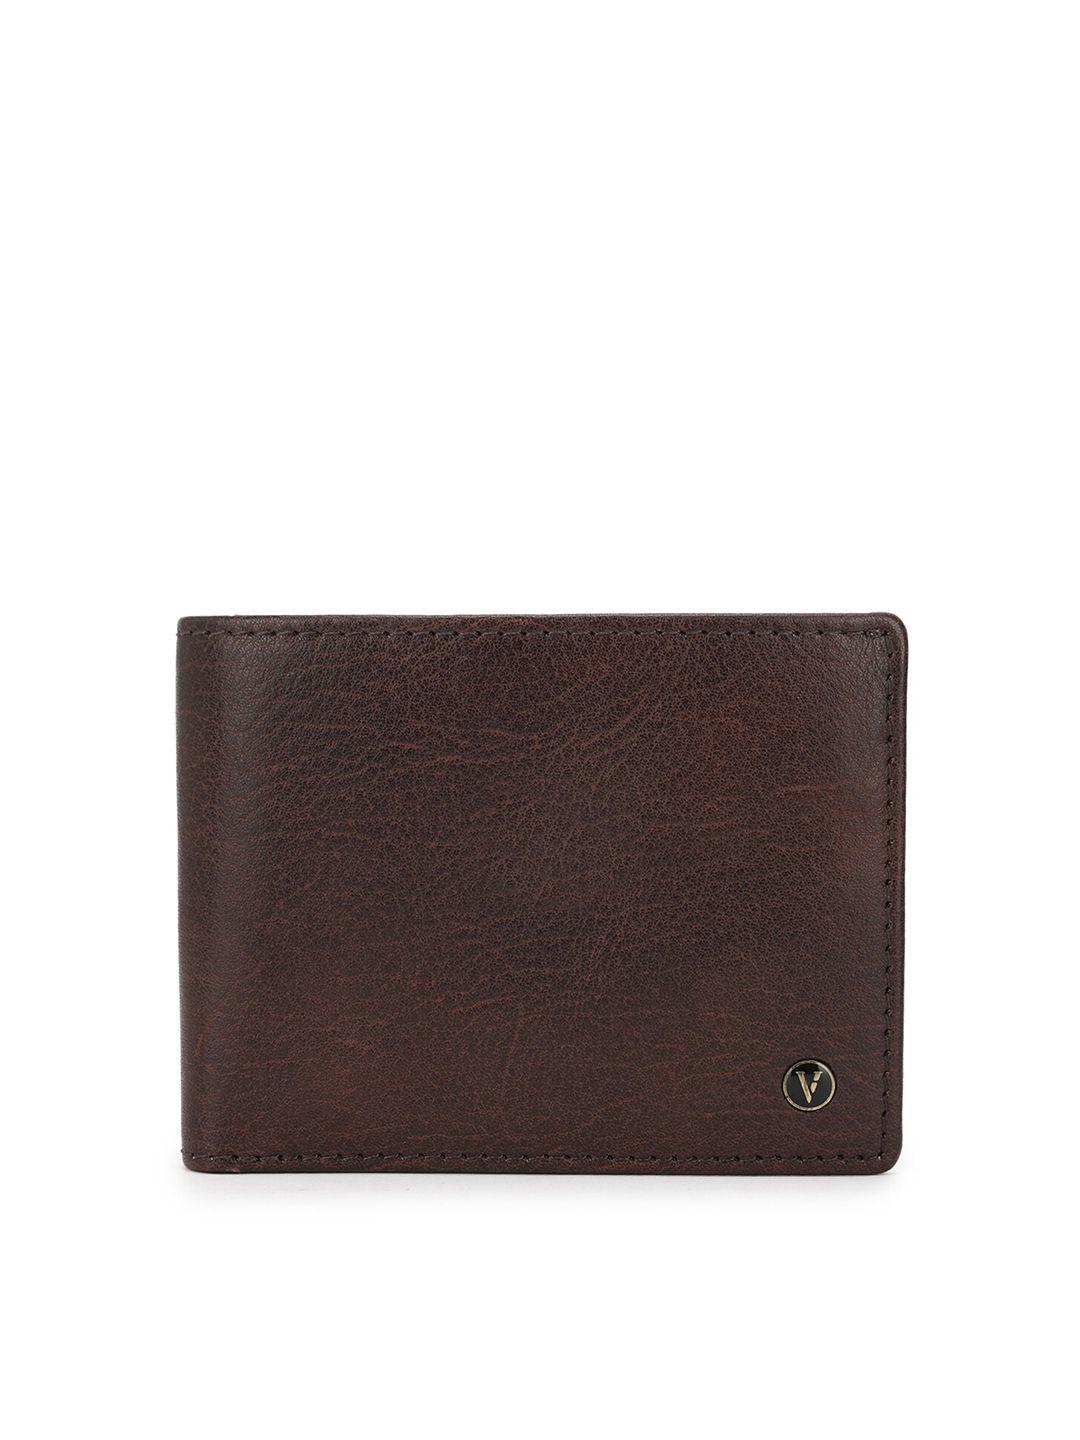 van heusen men brown textured leather two fold wallet